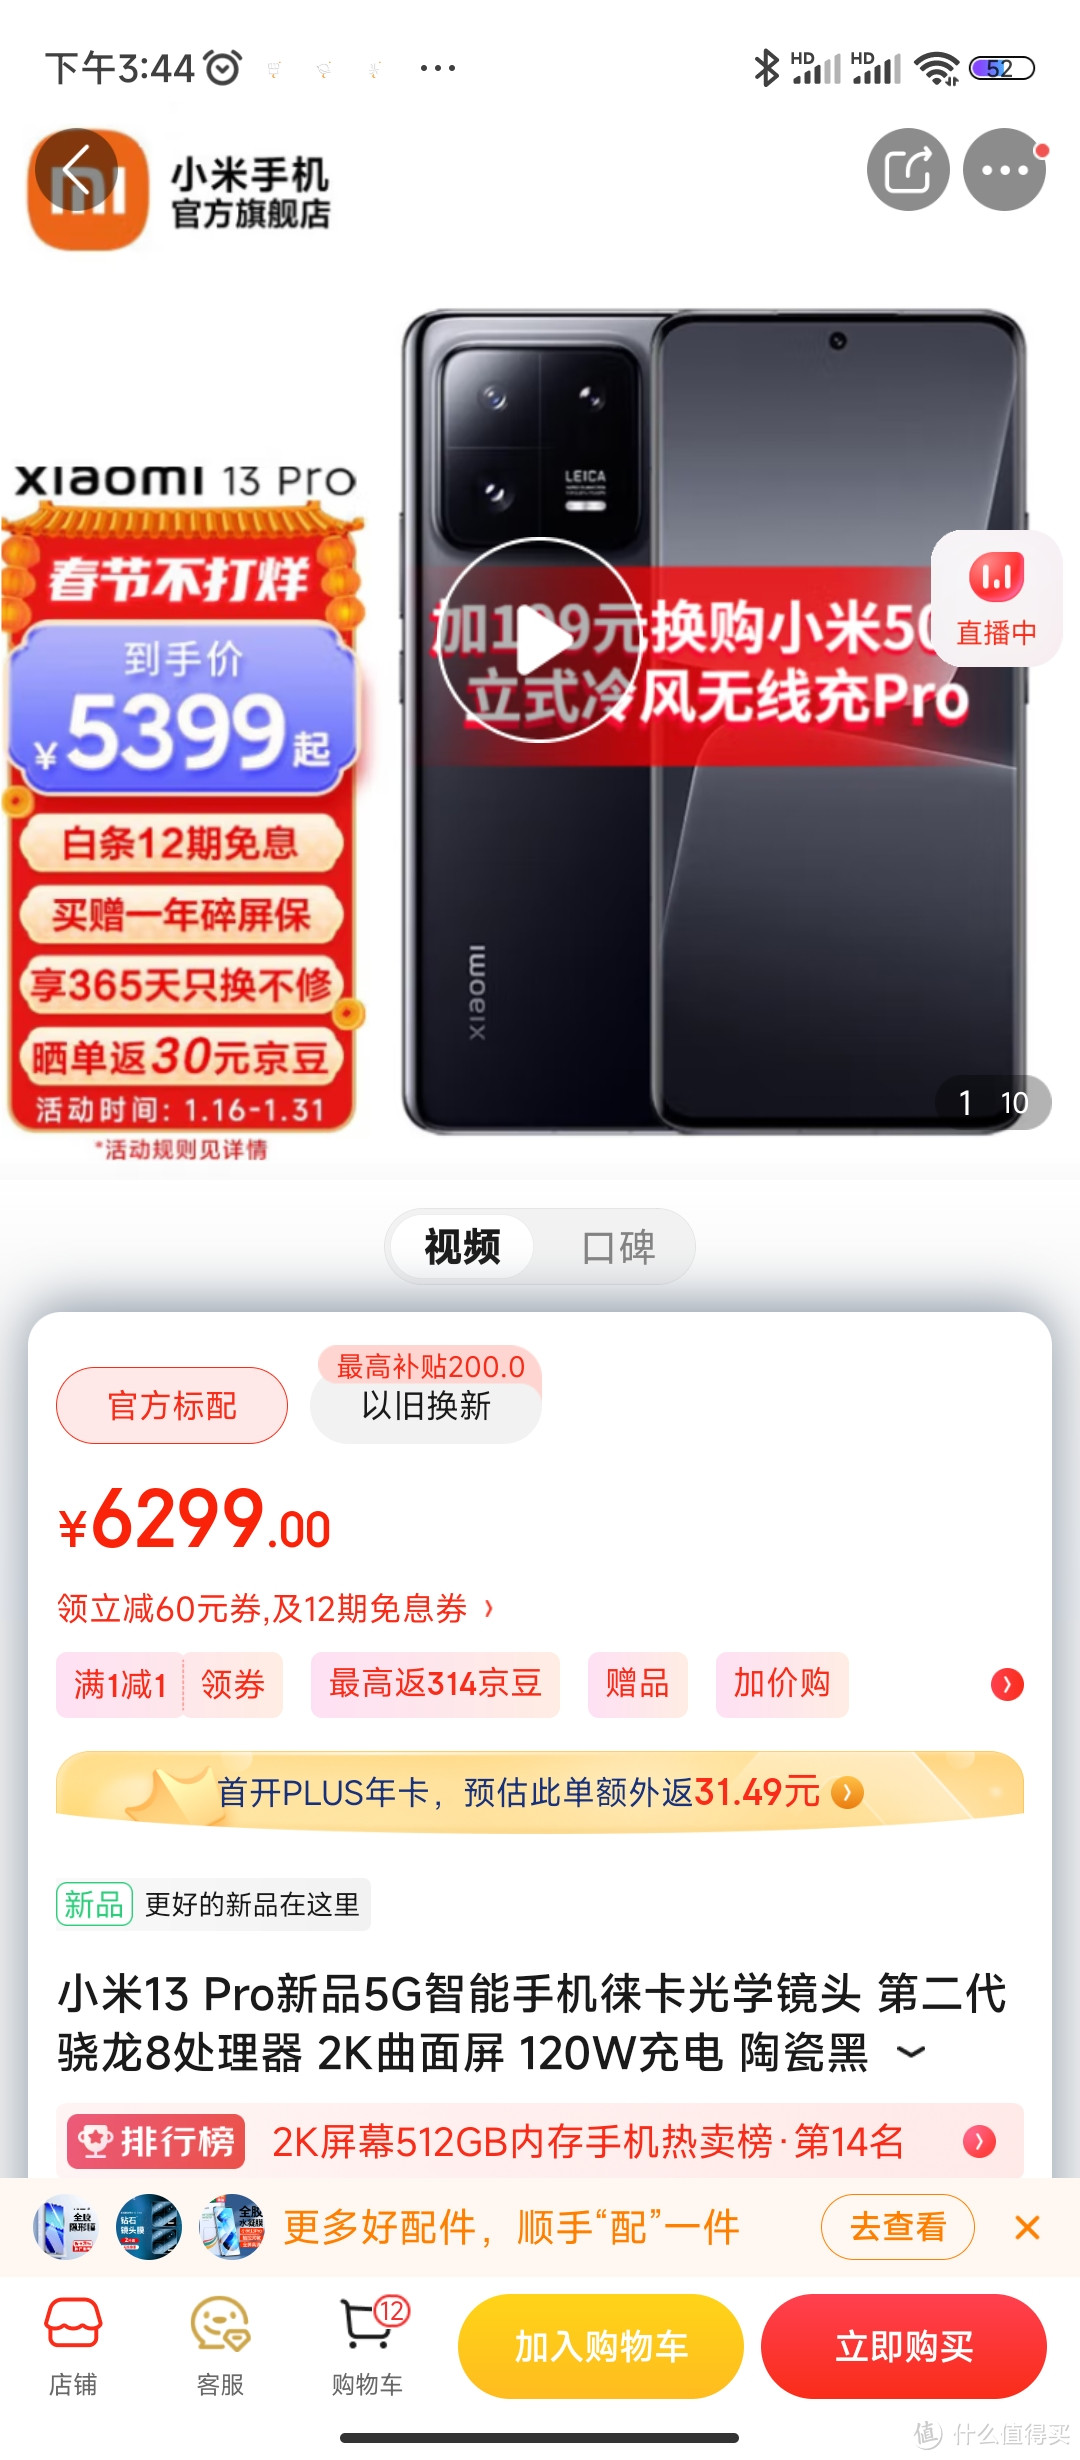 小米13 Pro新品5G智能手机徕卡光学镜头 第二代骁龙8处理器 2K曲面屏 120W充电 陶瓷黑 12GB+512GB